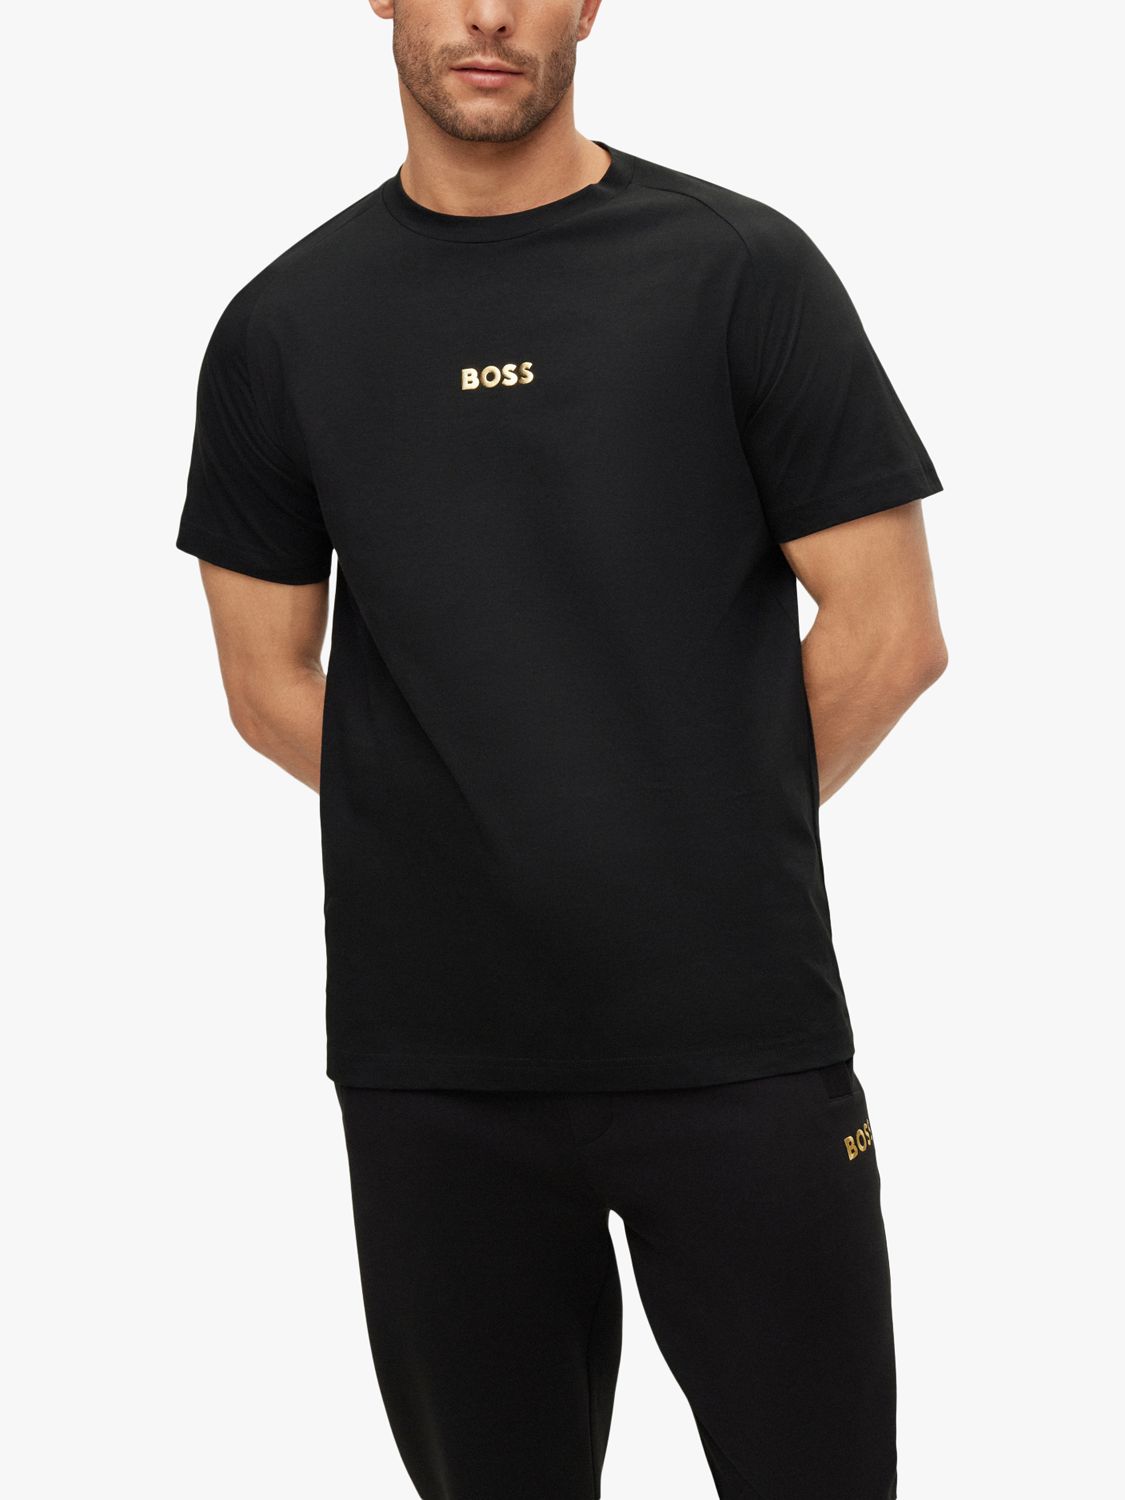 BOSS Tee 2 Short Sleeve T-Shirt, S Black, Cotton Logo